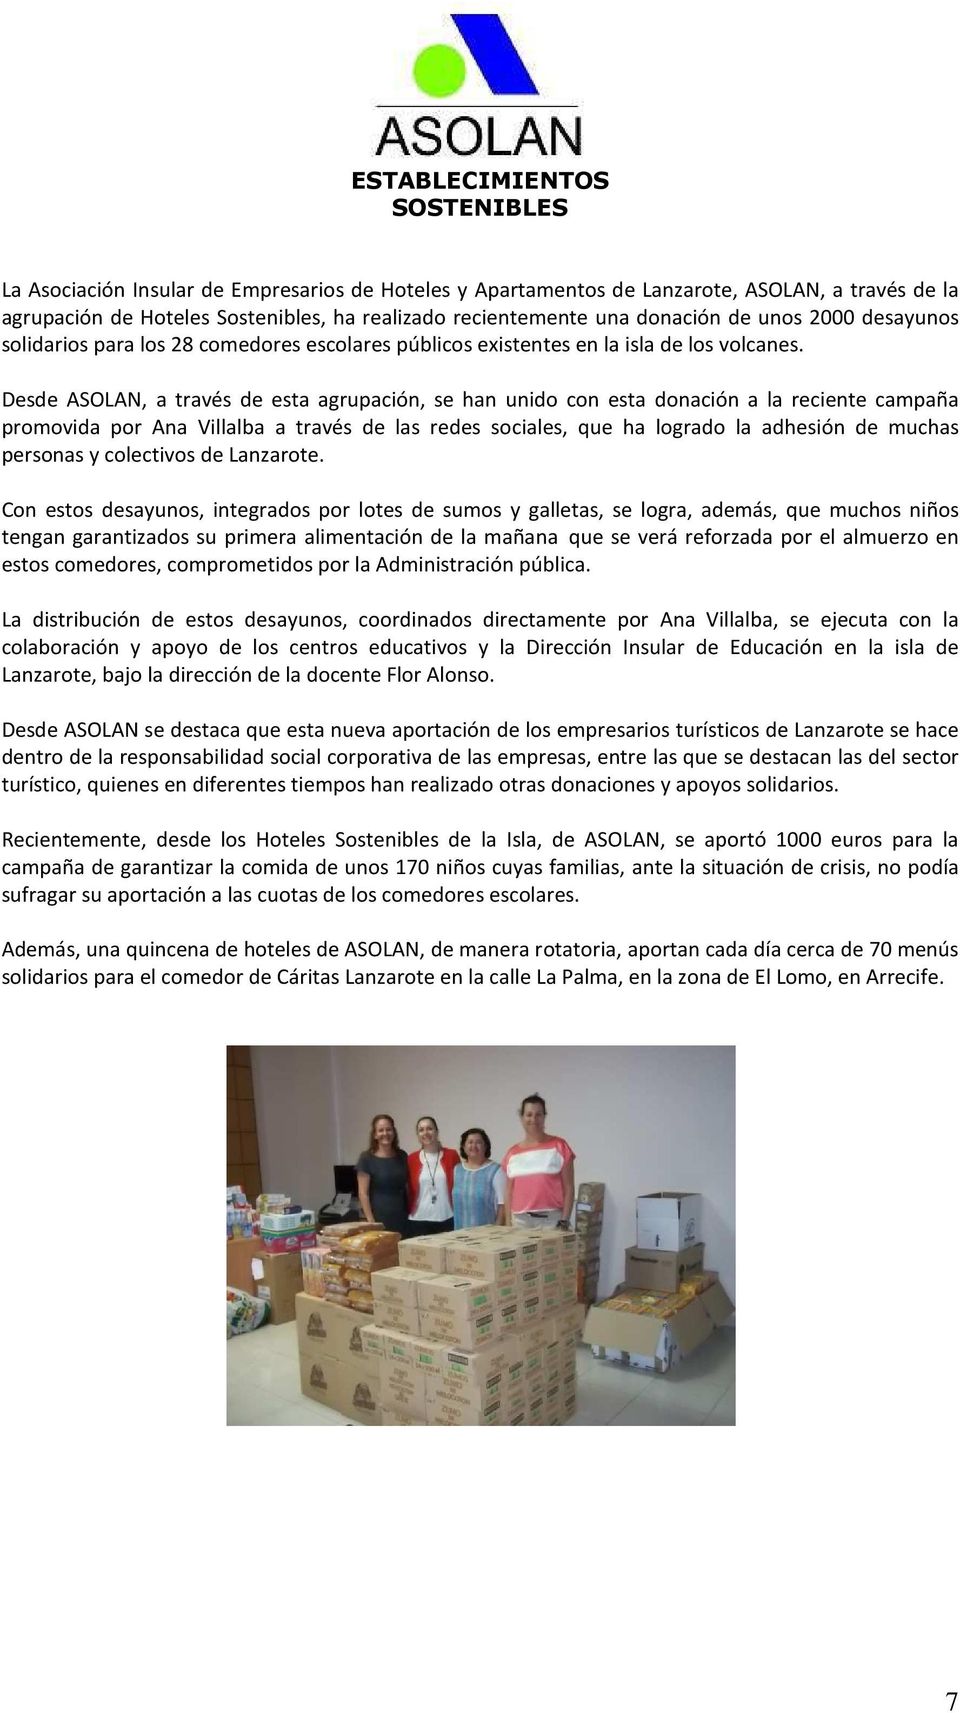 Desde ASOLAN, a través de esta agrupación, se han unido con esta donación a la reciente campaña promovida por Ana Villalba a través de las redes sociales, que ha logrado la adhesión de muchas